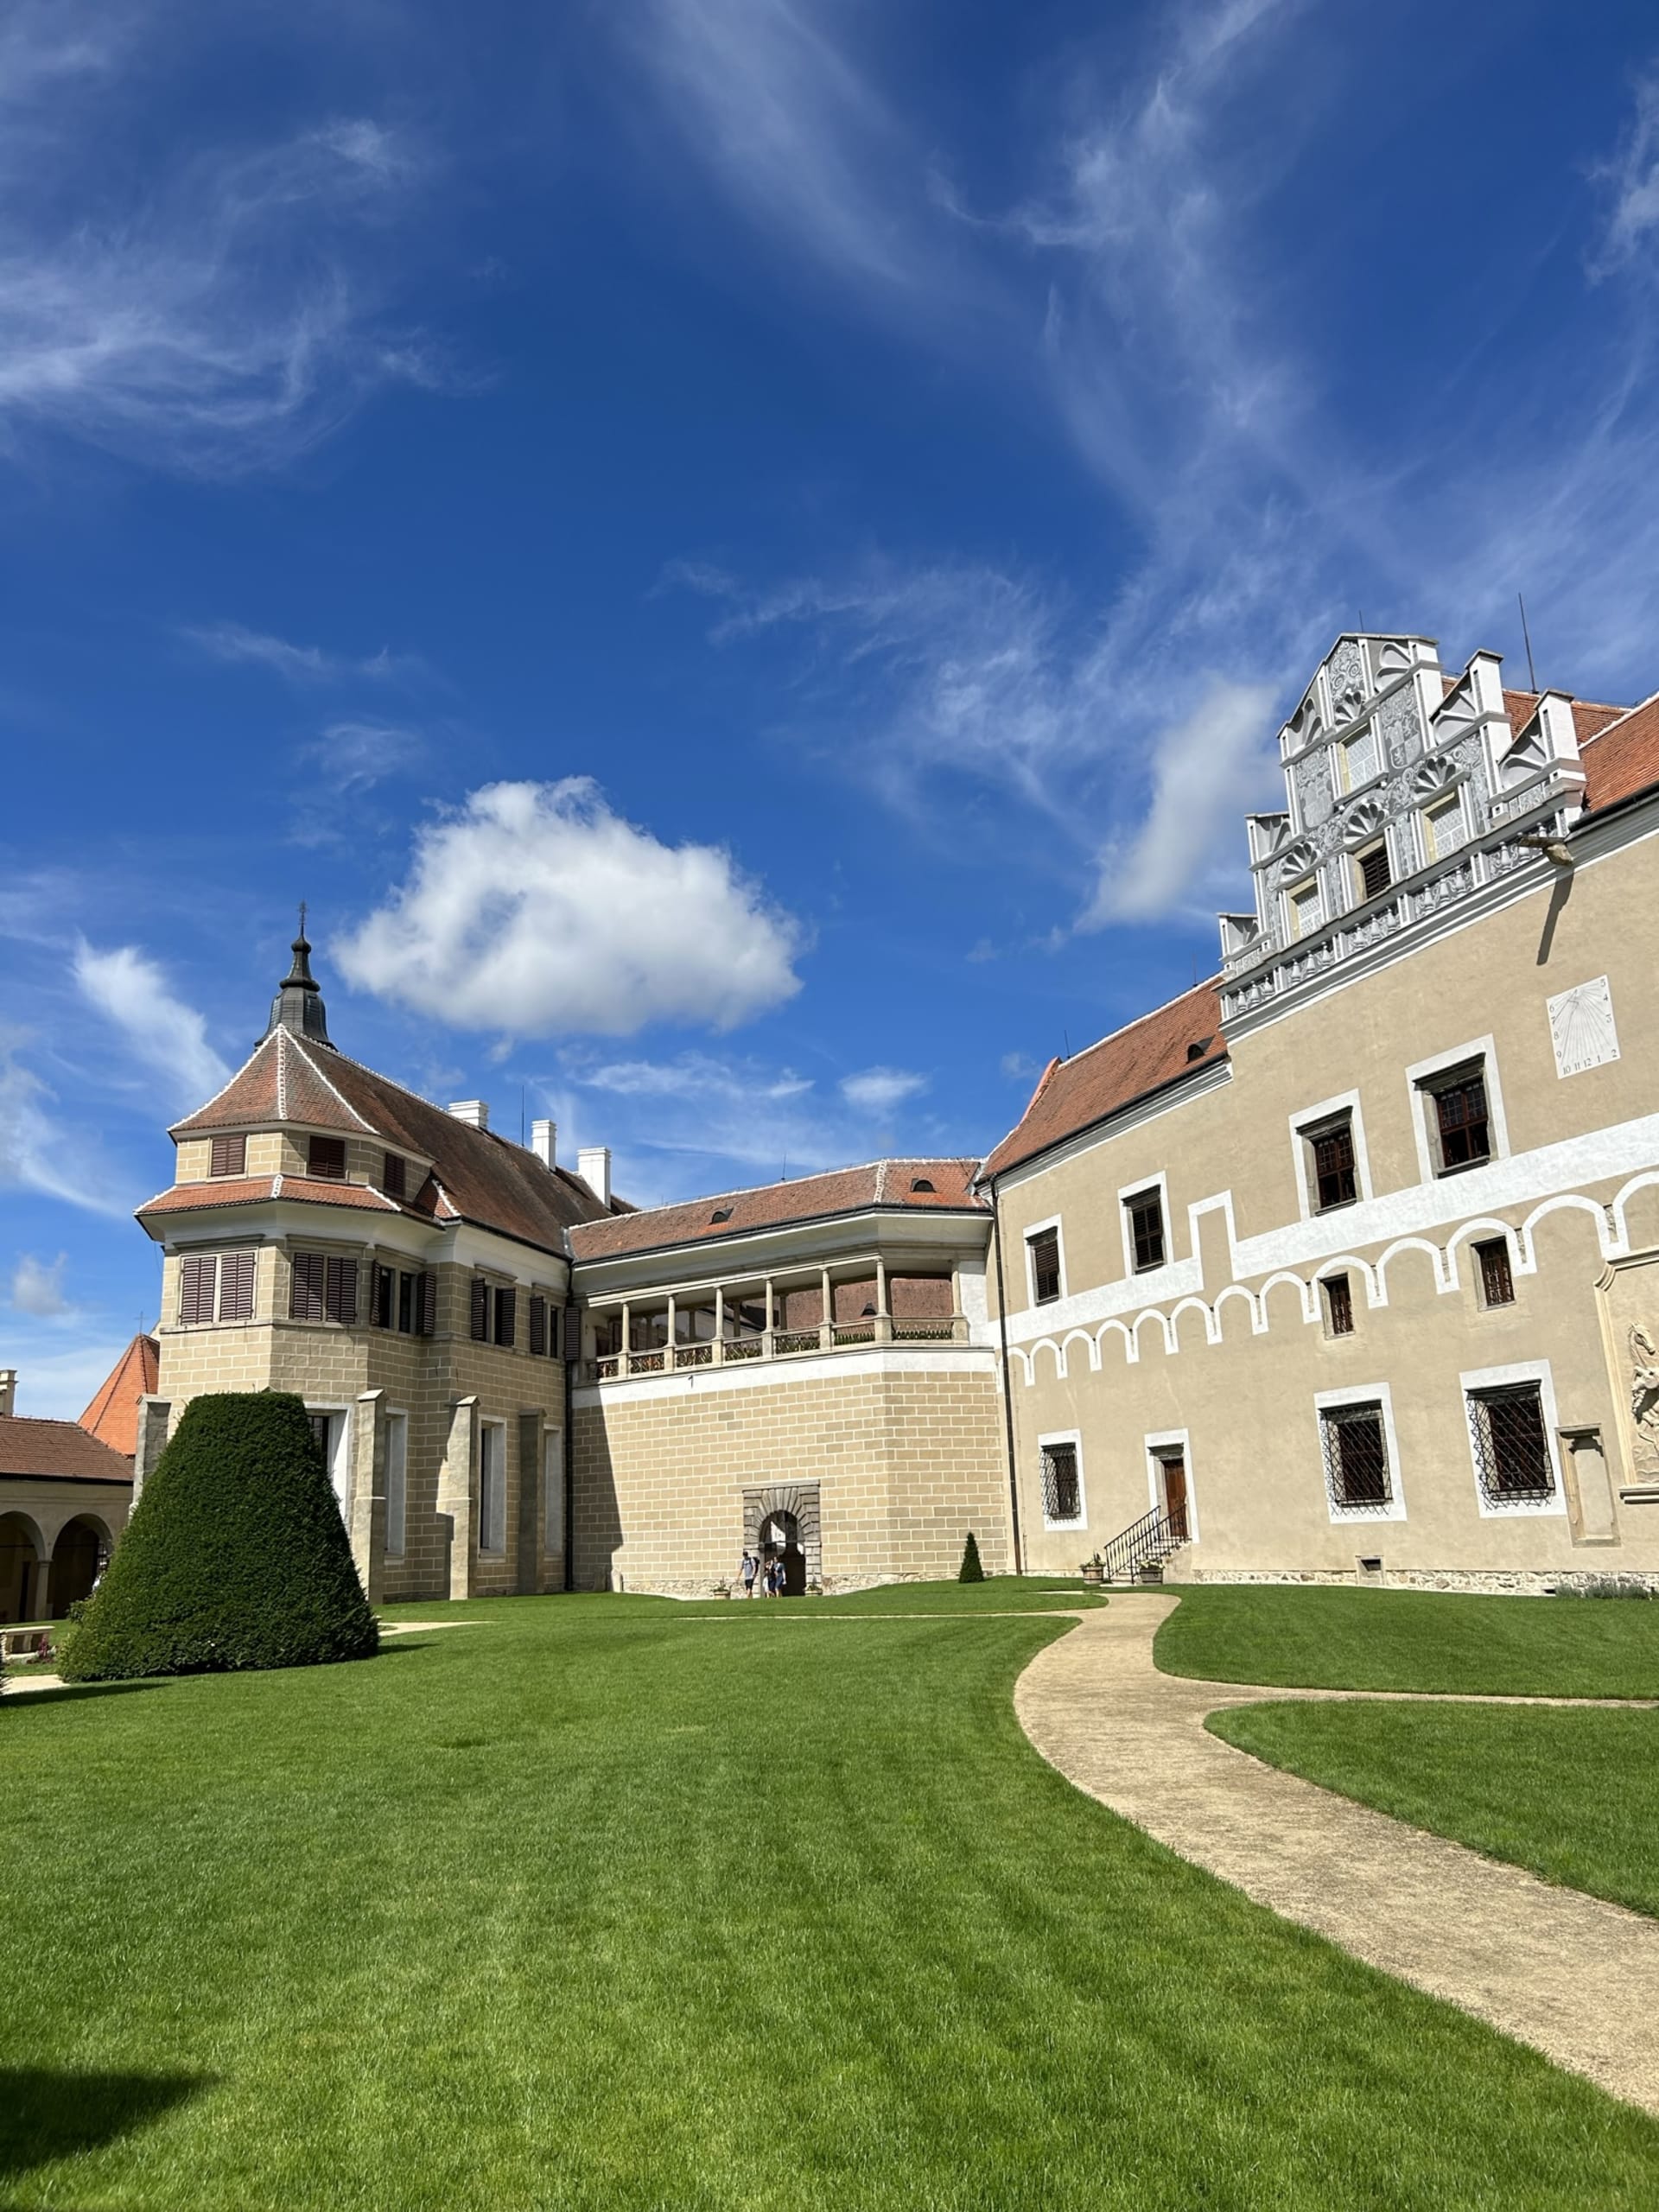 Letos v červenci se státní zámek Telč po rozsáhlé rekonstrukci opět otevřel veřejnosti. Tříletá stavební a restaurátorská obnova za 241,5 milionu korun byla dotovaná Evropskou unií. 